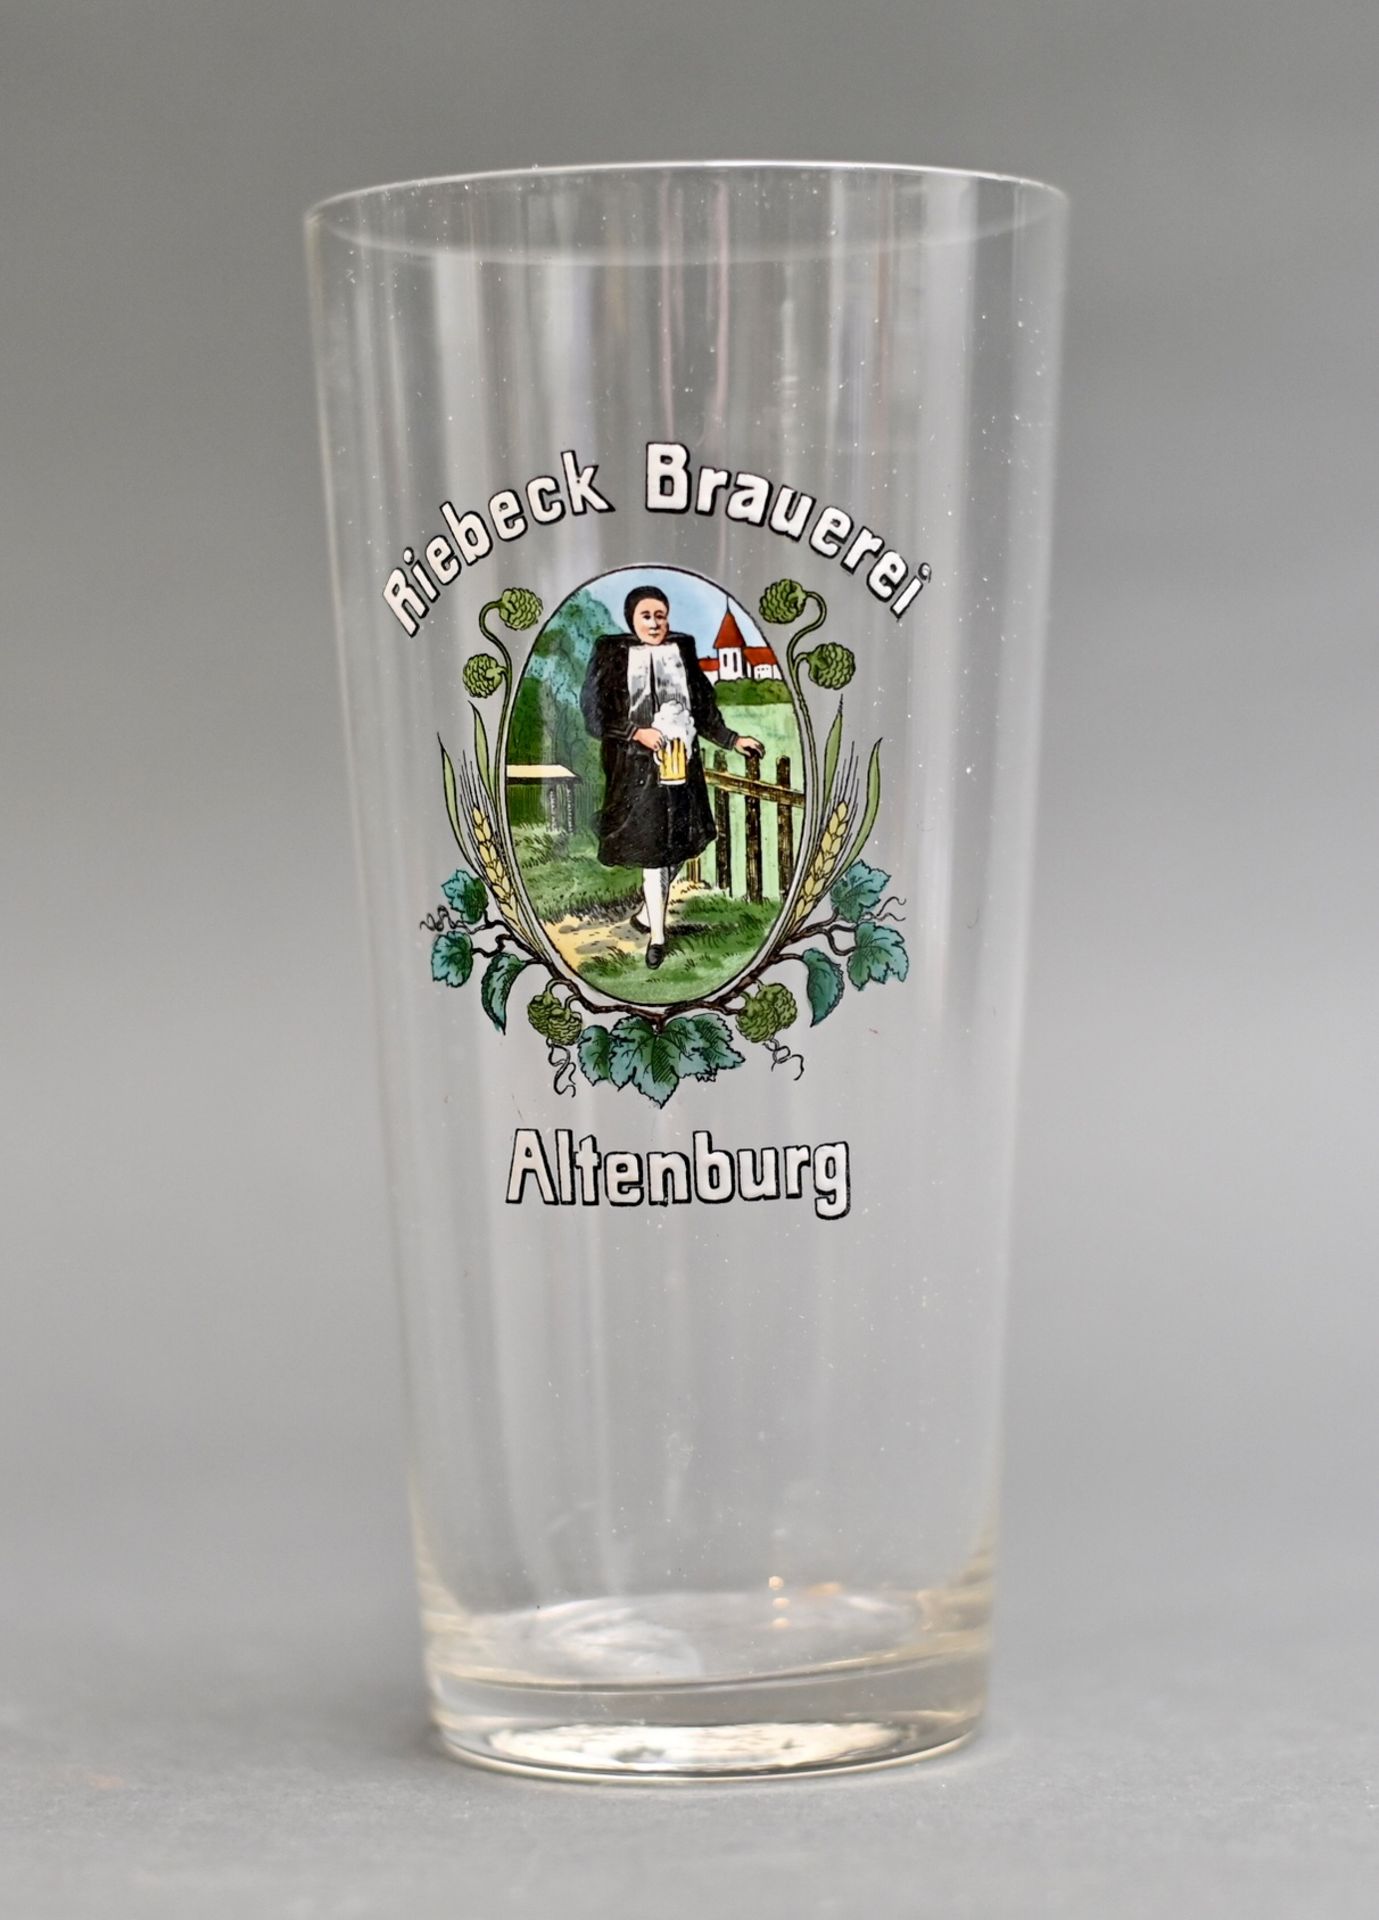 Brauerei-Glas "Riebeck Brauerei Altenburg", zartes Becherglas geeicht 10/20l, guter Zustand, H 17